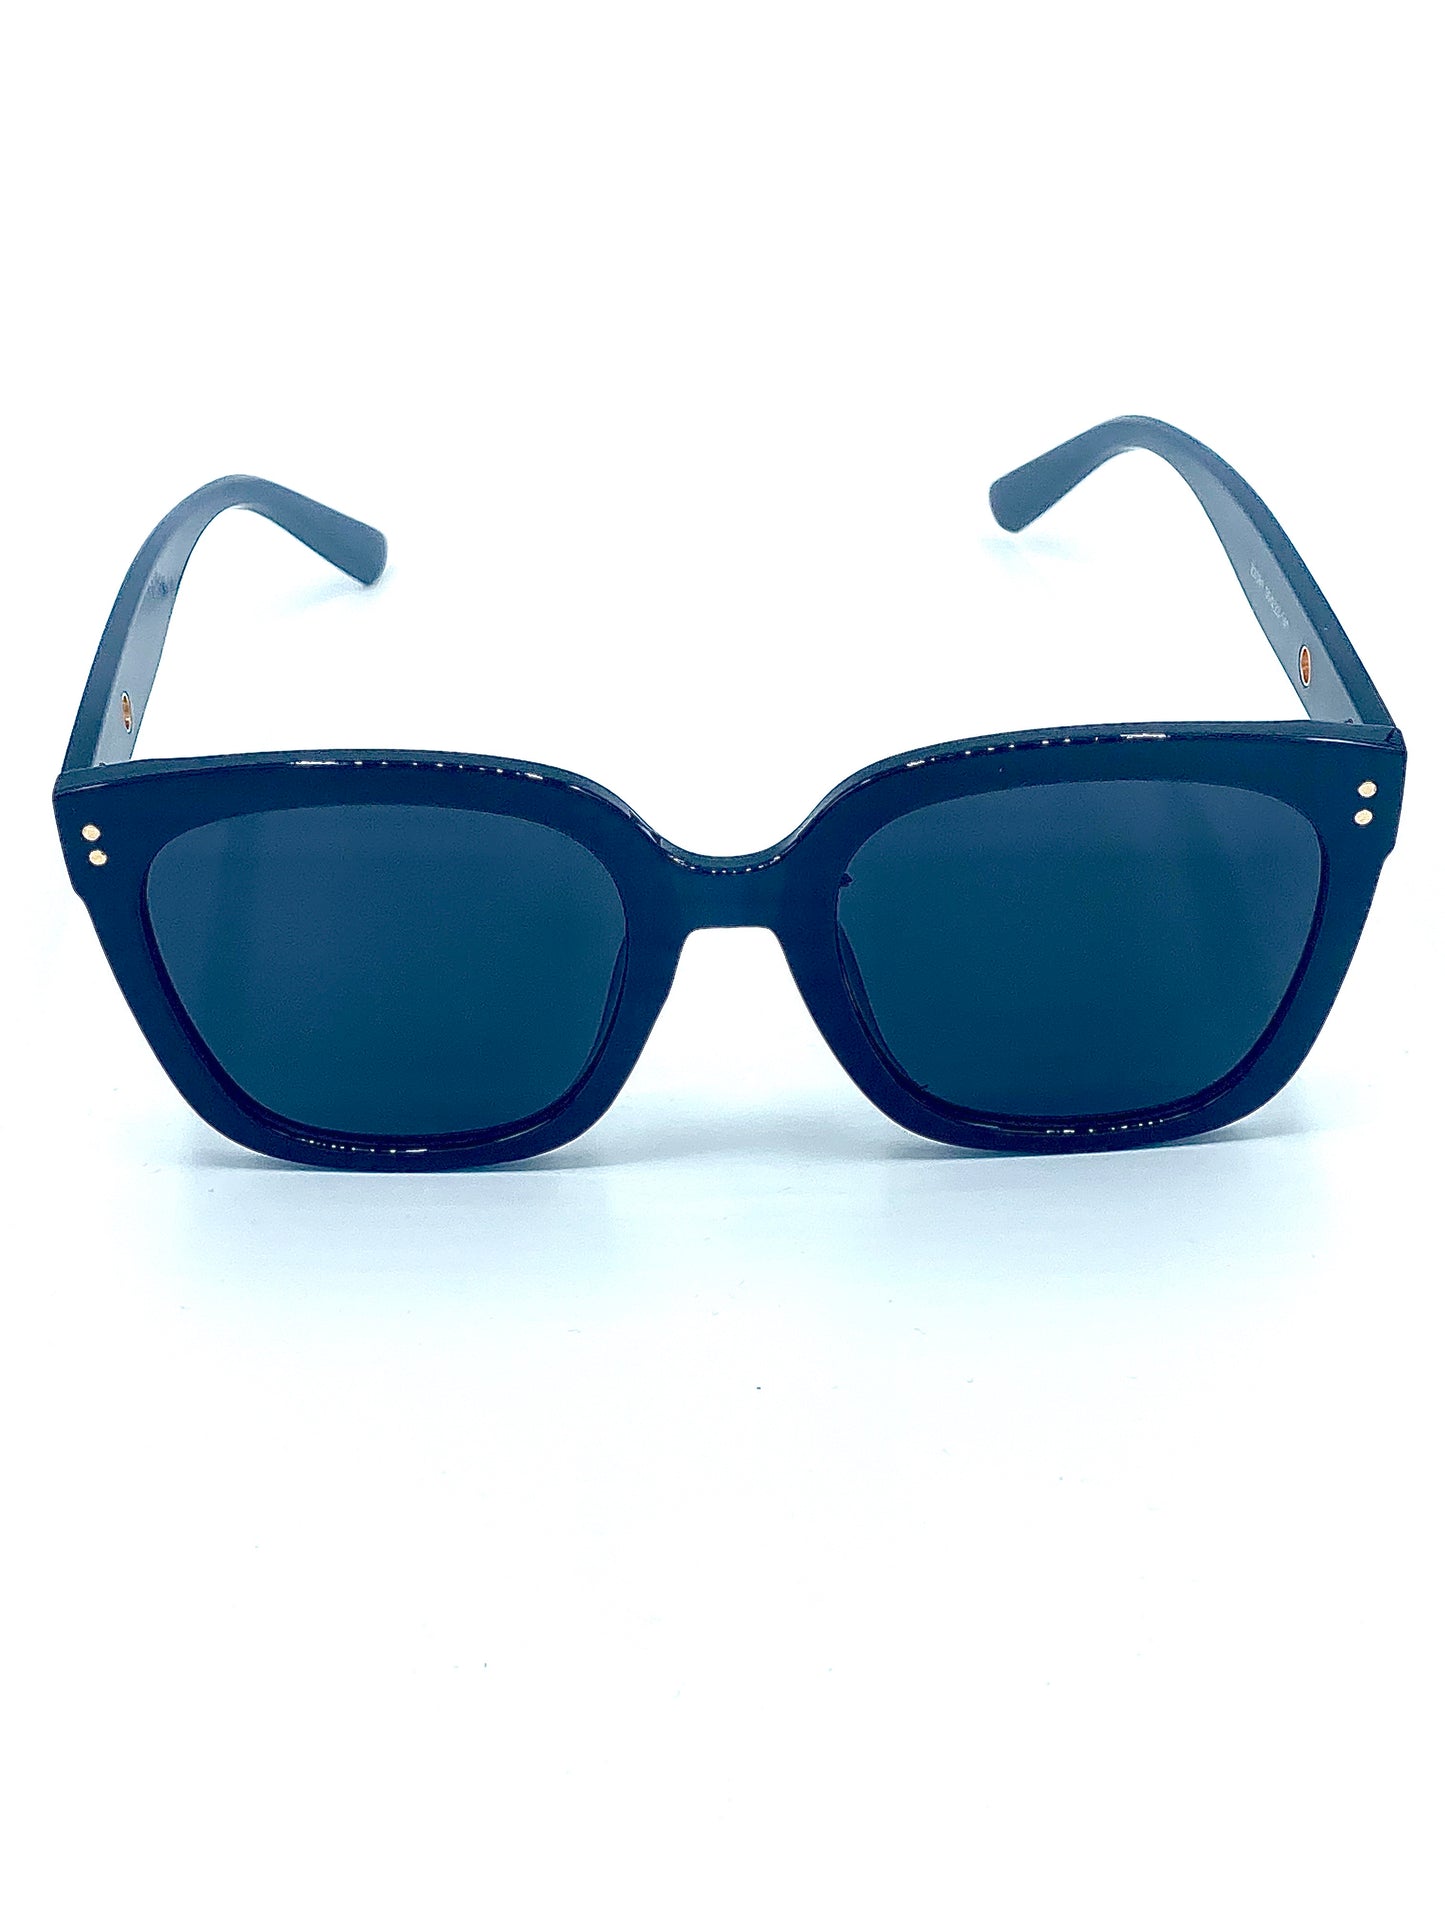 Nude sunglasses - Monique Fashion Accessories